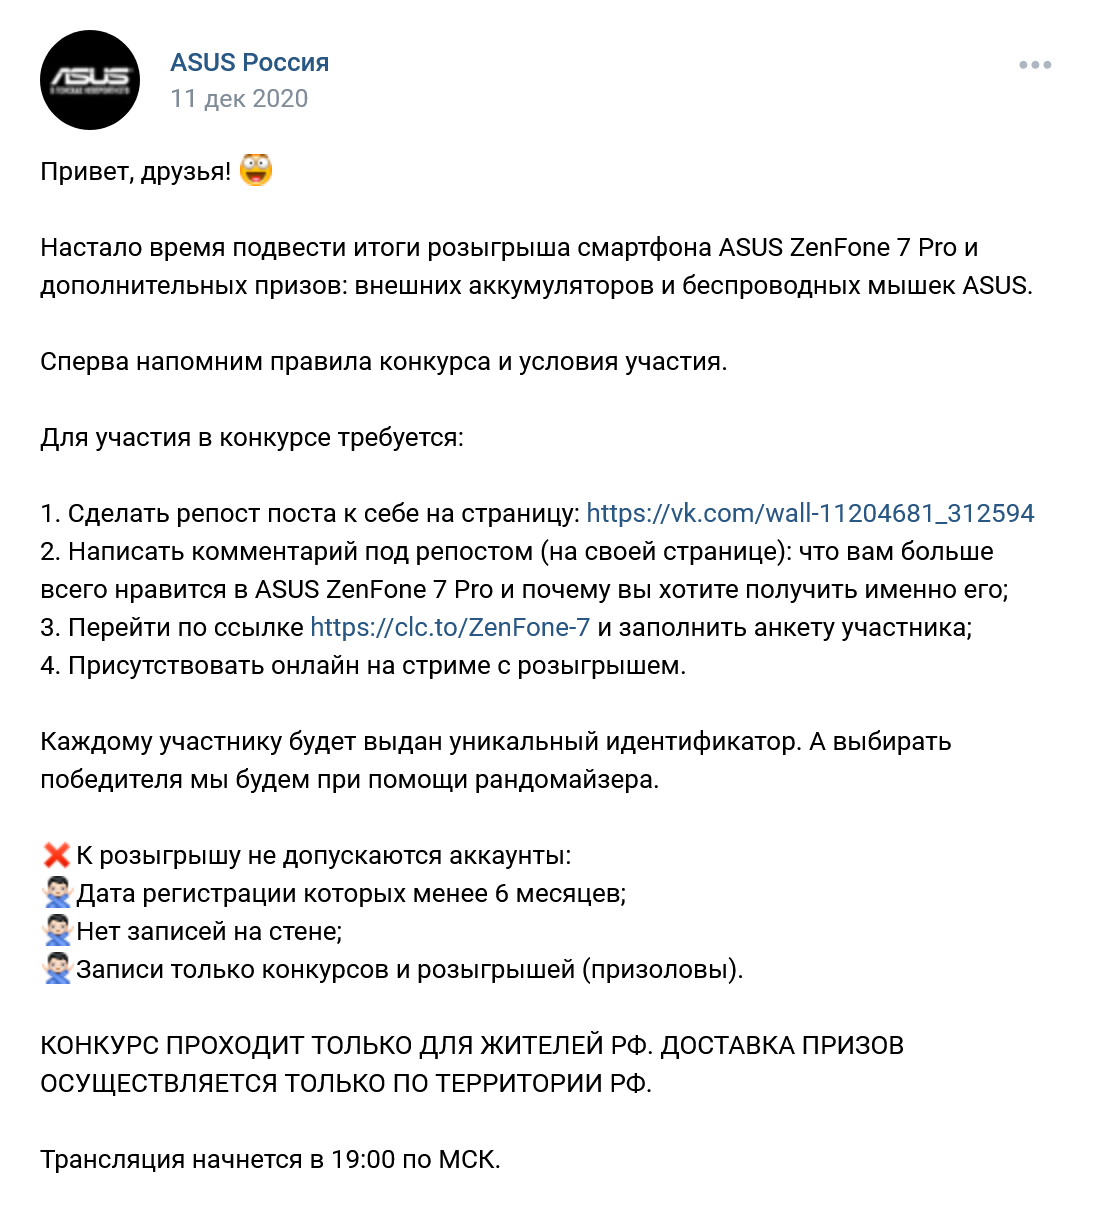 Конкурс ВКонтакте: пример оформления